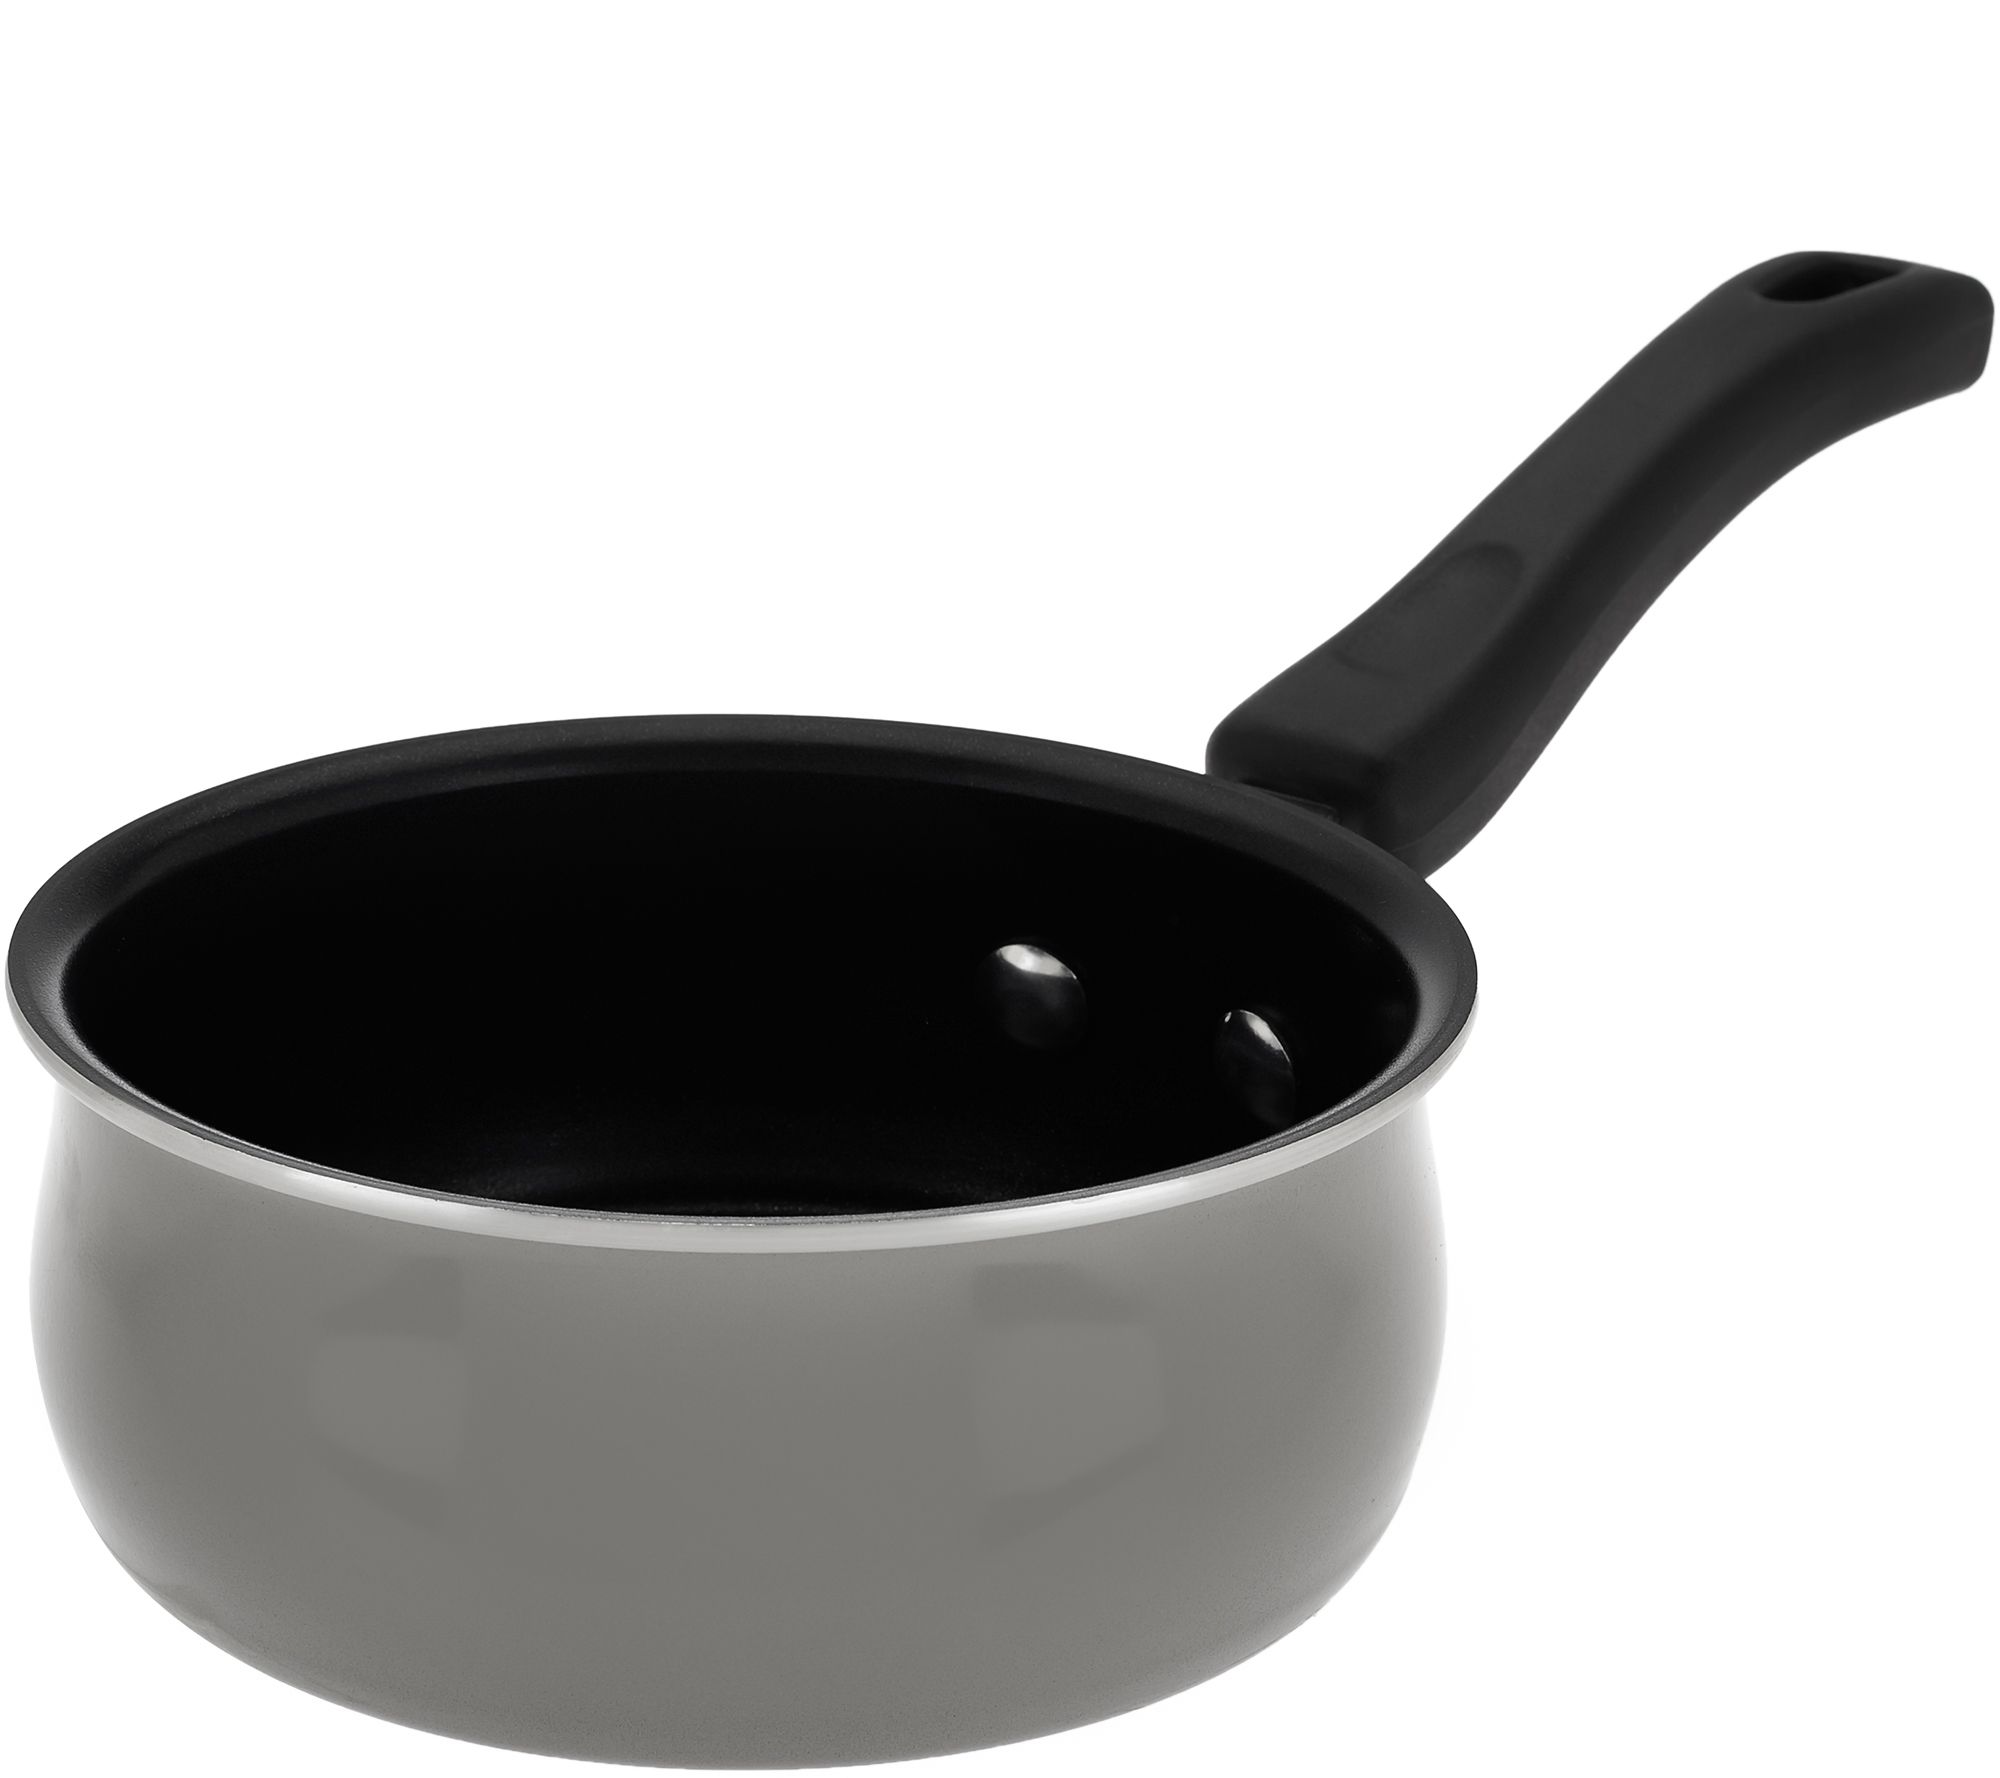 CooksEssentials 10-pc Porcelain Enamel Dishwasher Safe Cookware